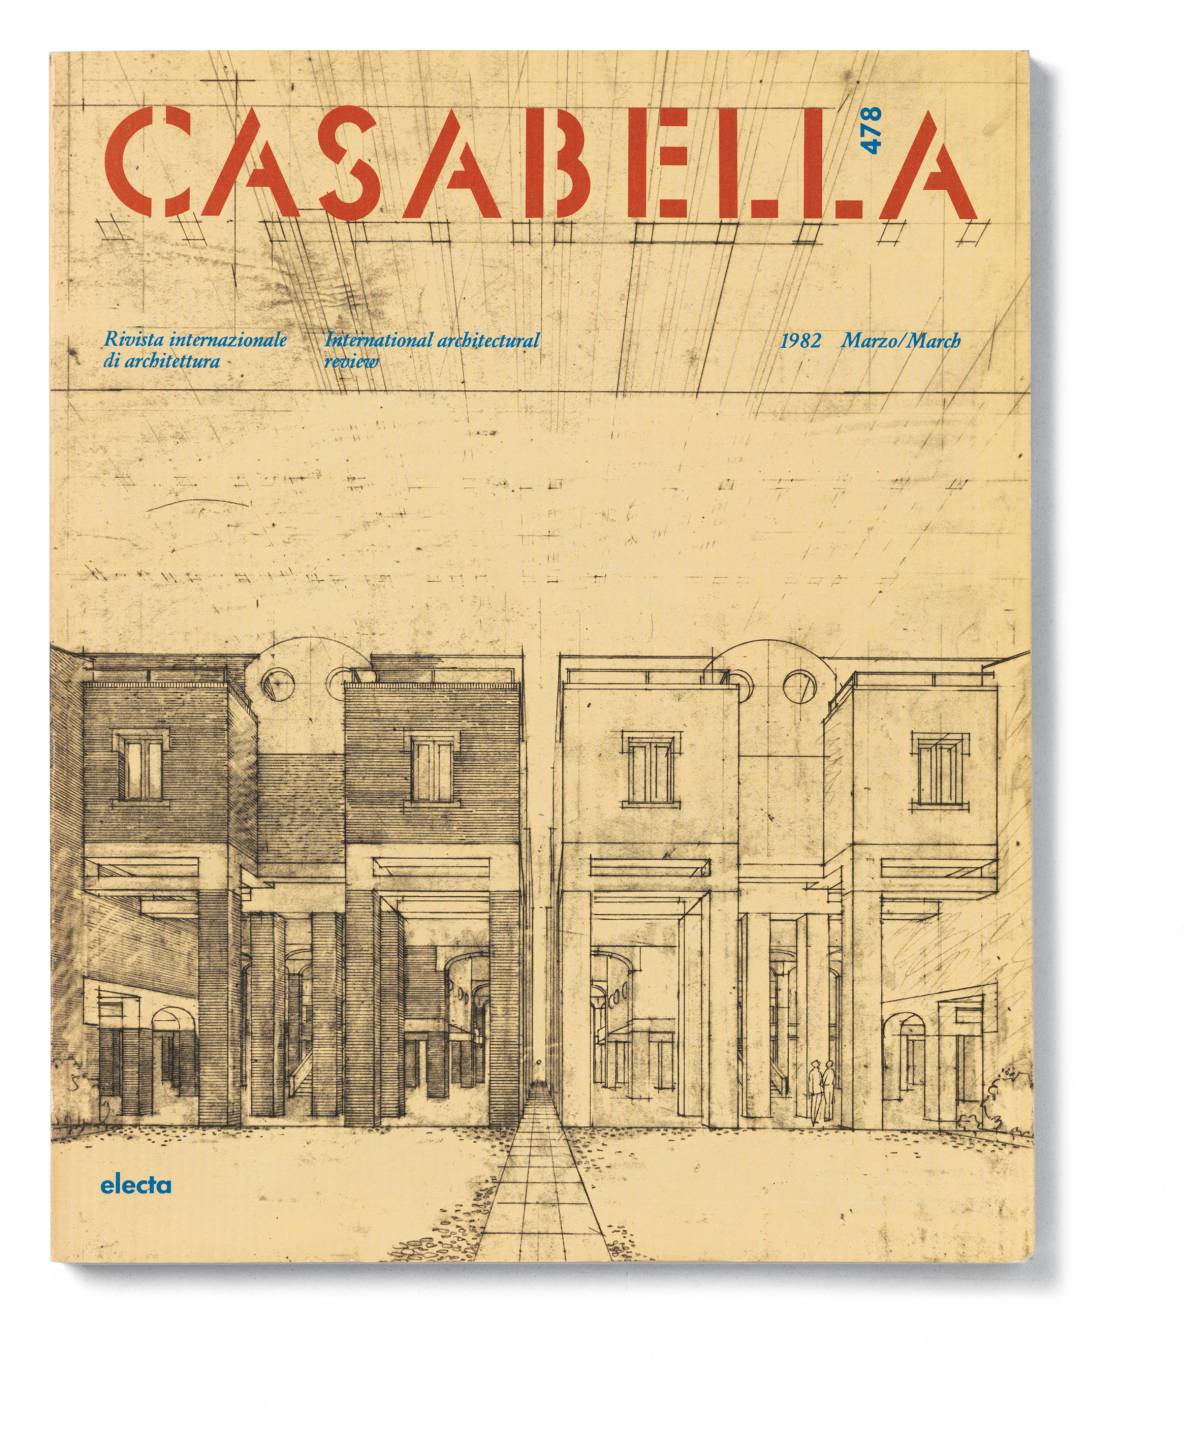 Casabella: una rivista, molte storie